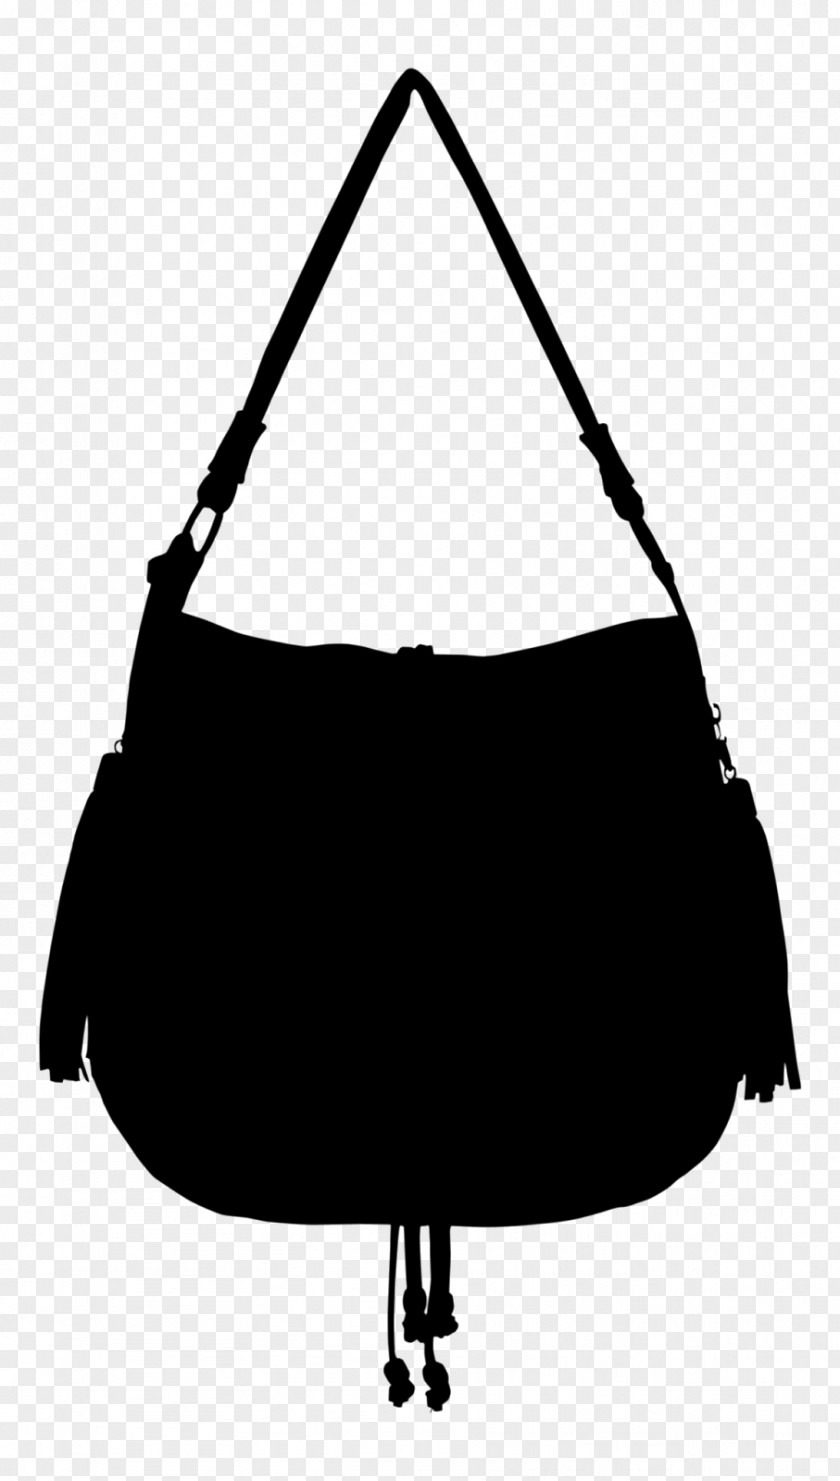 Shoulder Bag M Handbag Product Design PNG